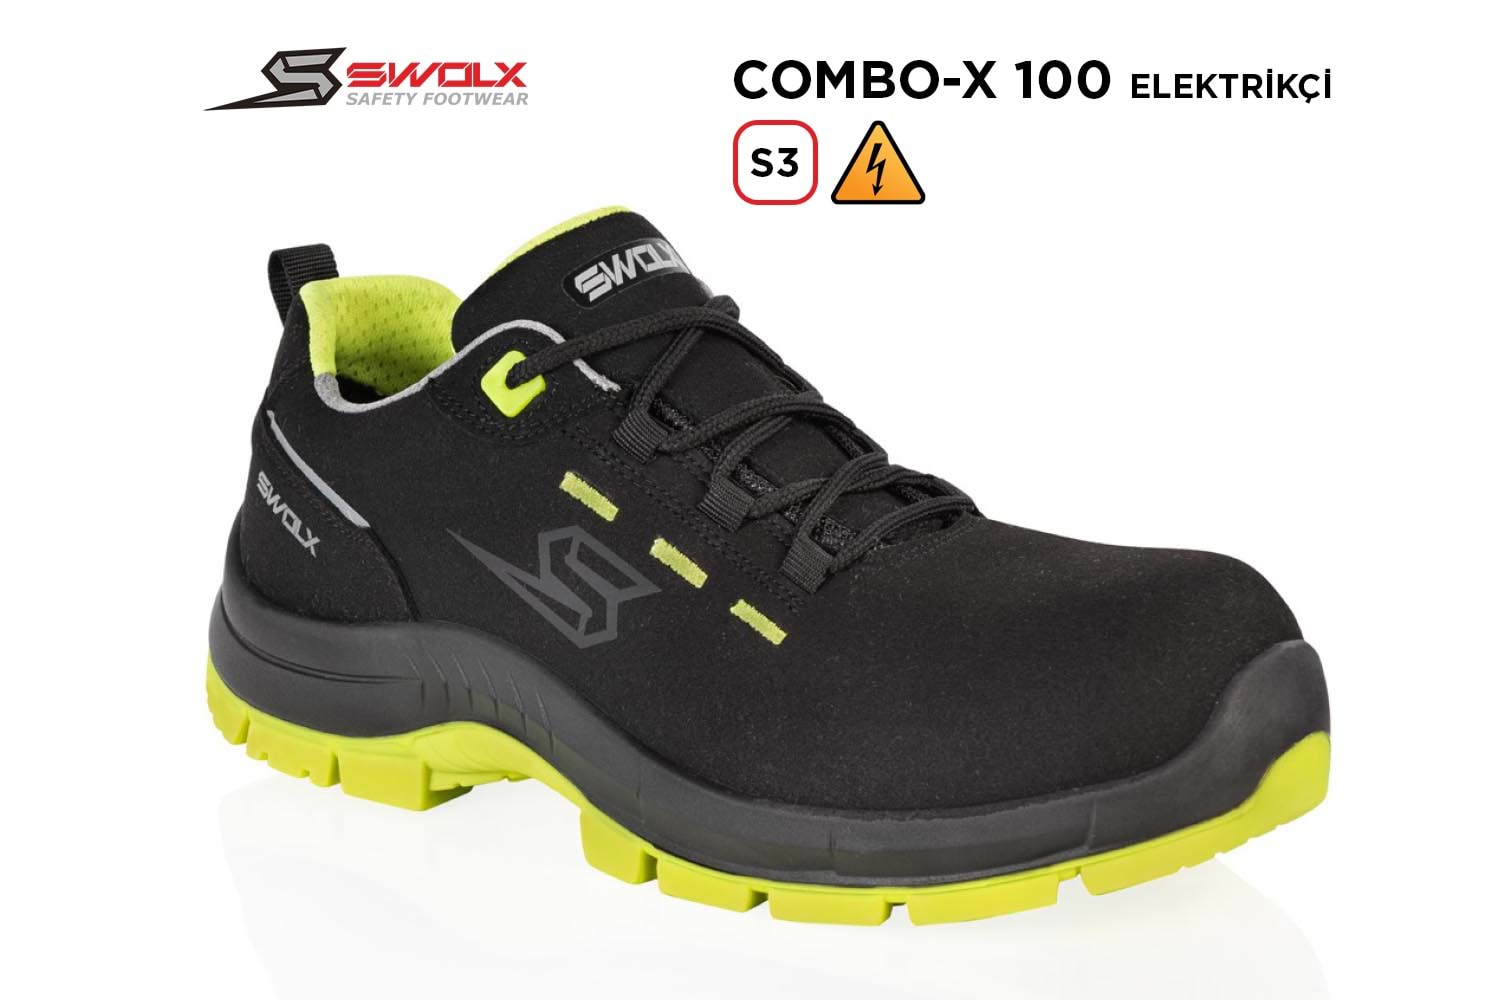 Swolx İş Ayakkabısı - Combo-X 100 S3 Elektrikçi - 37